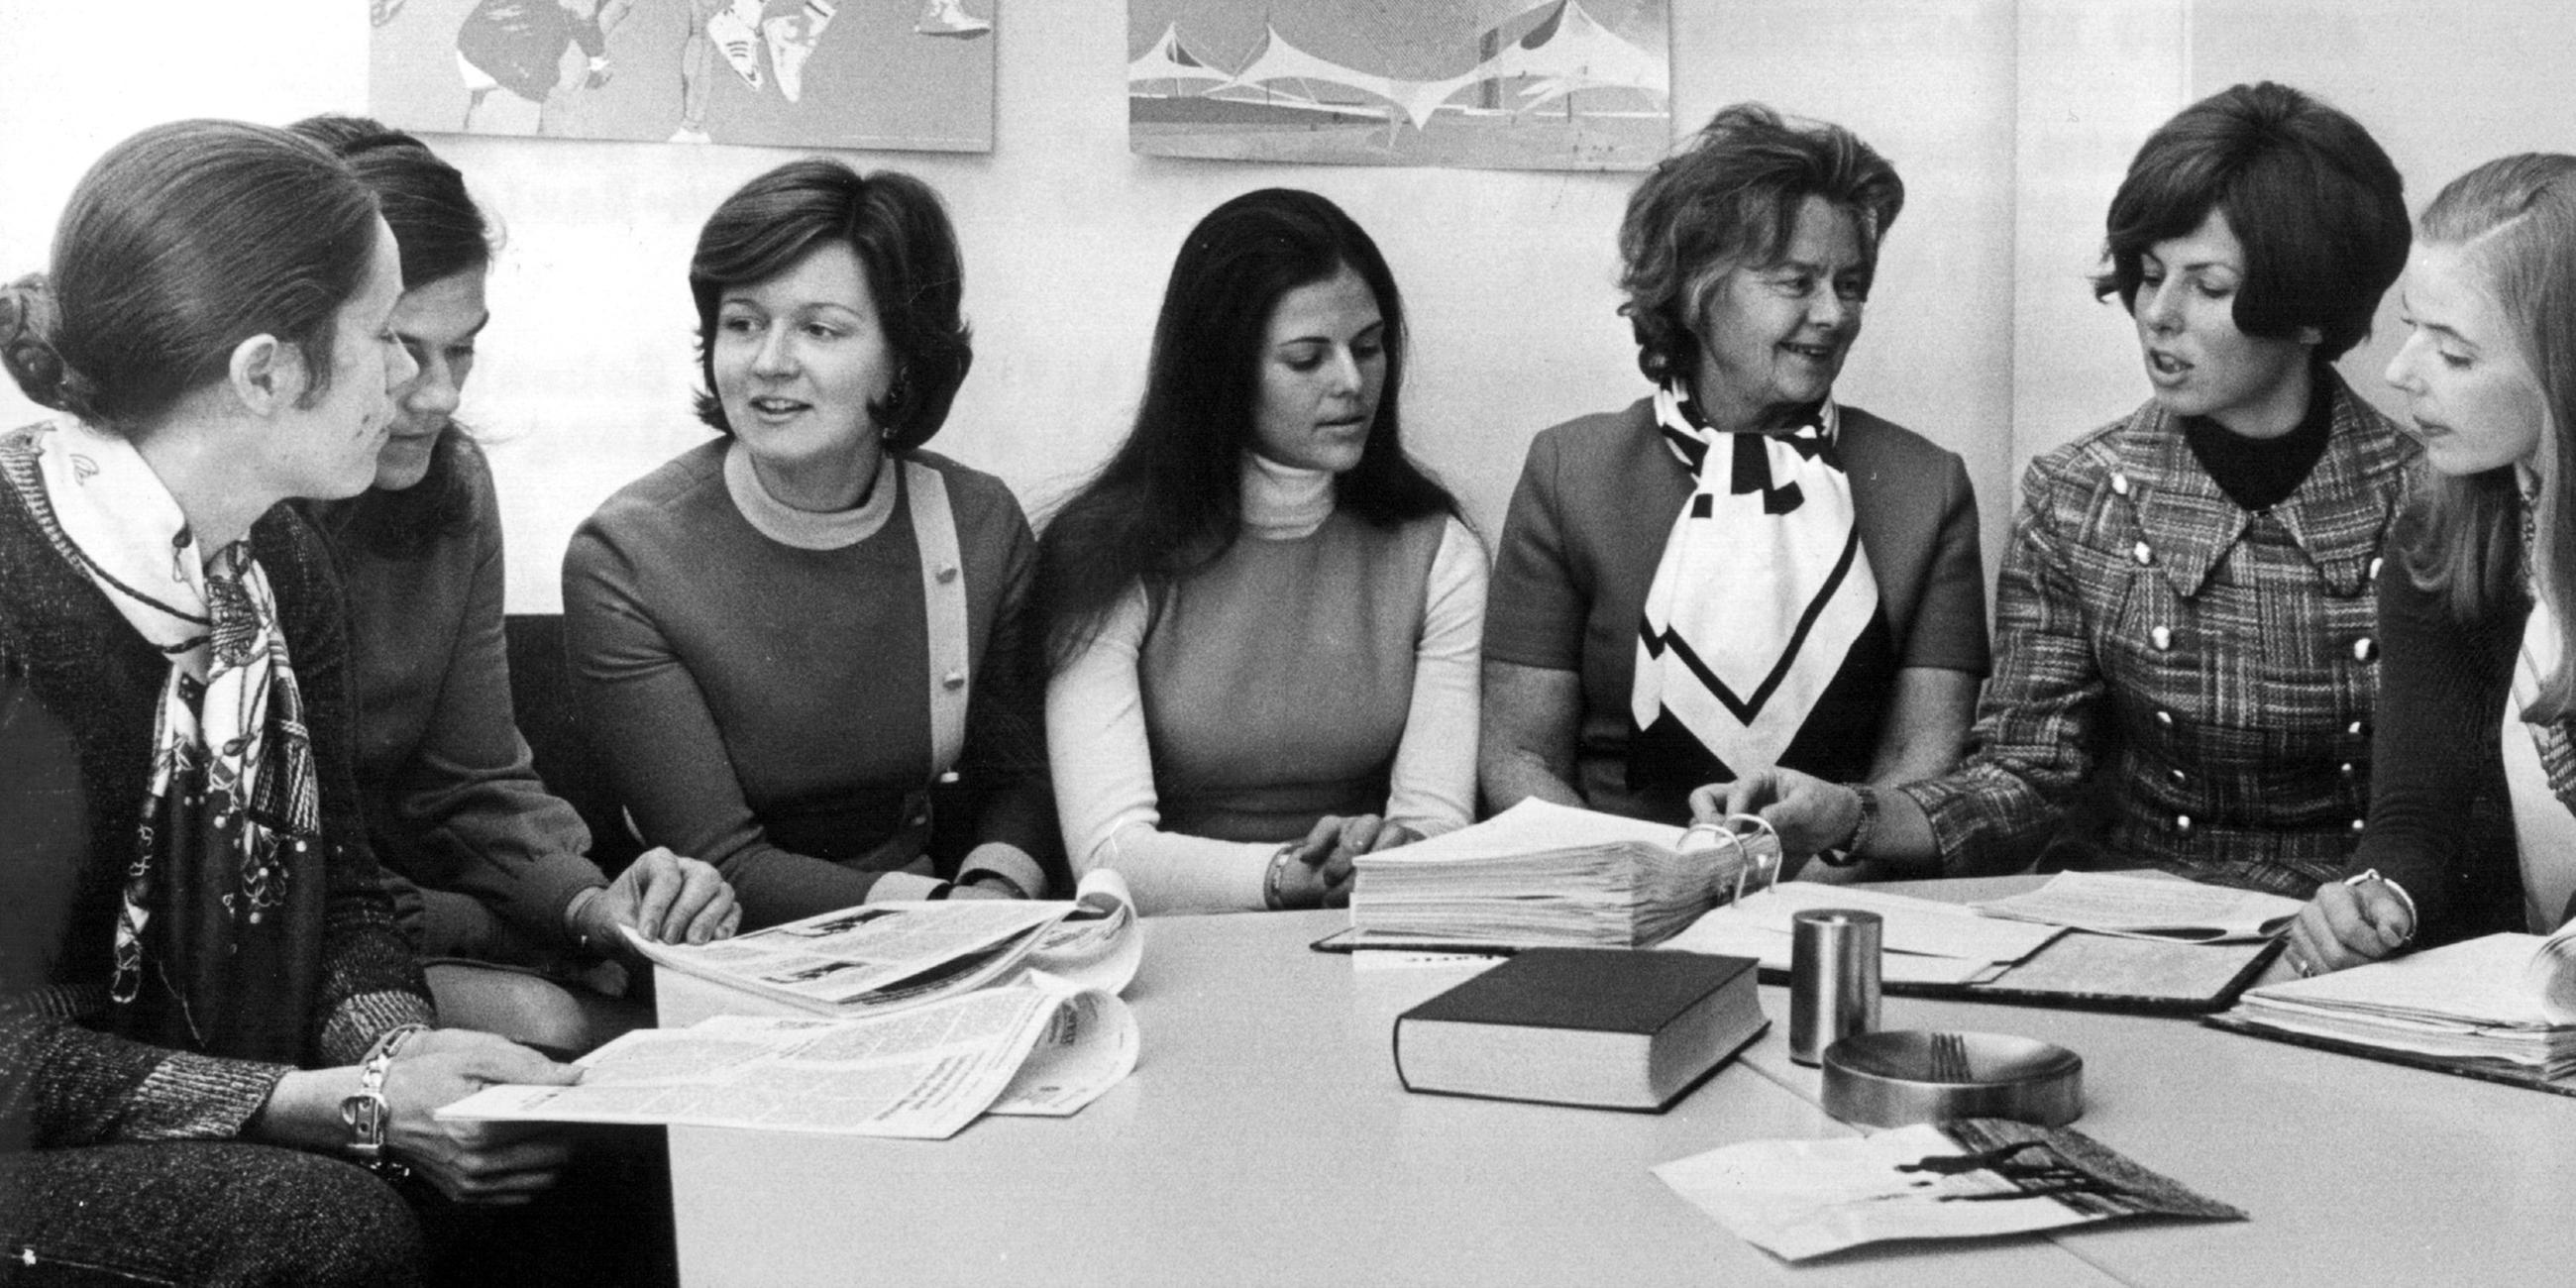 Archiv: Silvia nimmt mit anderen Hostessen an einer Schulung vor den Olympischen Spielenin München 1972 teil